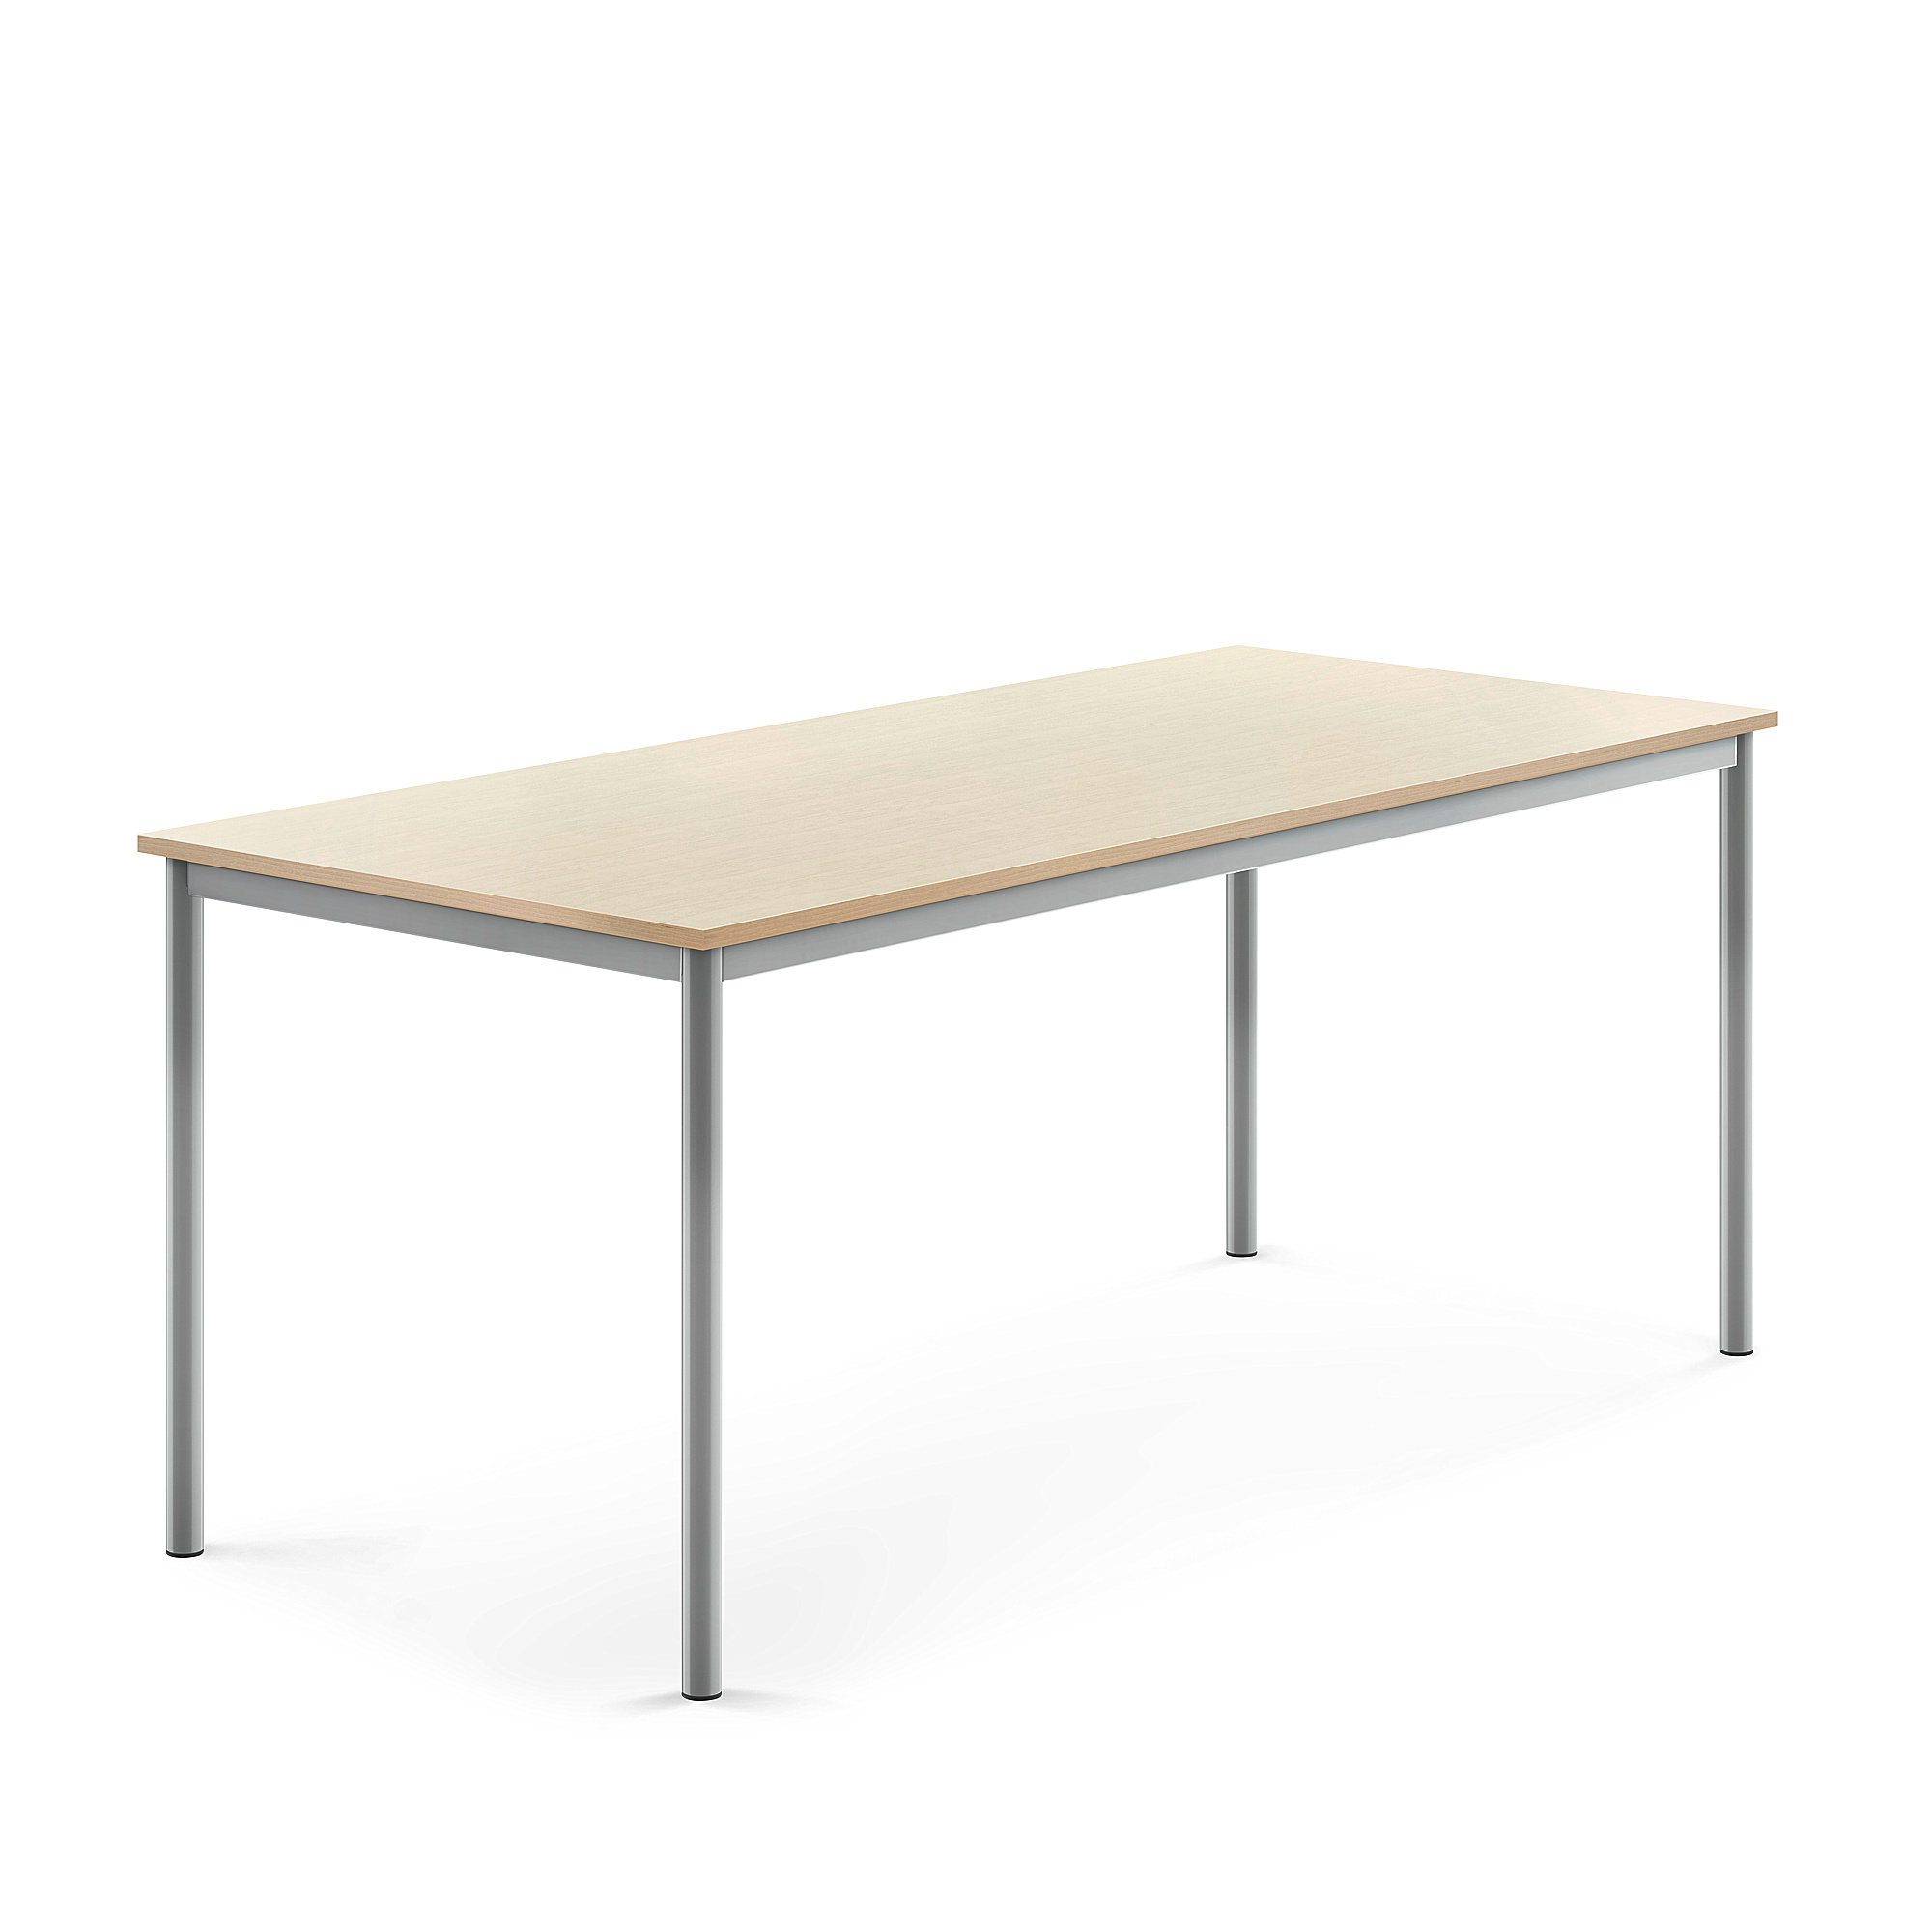 Stůl SONITUS, 1800x800x720 mm, stříbrné nohy, HPL deska tlumící hluk, bříza